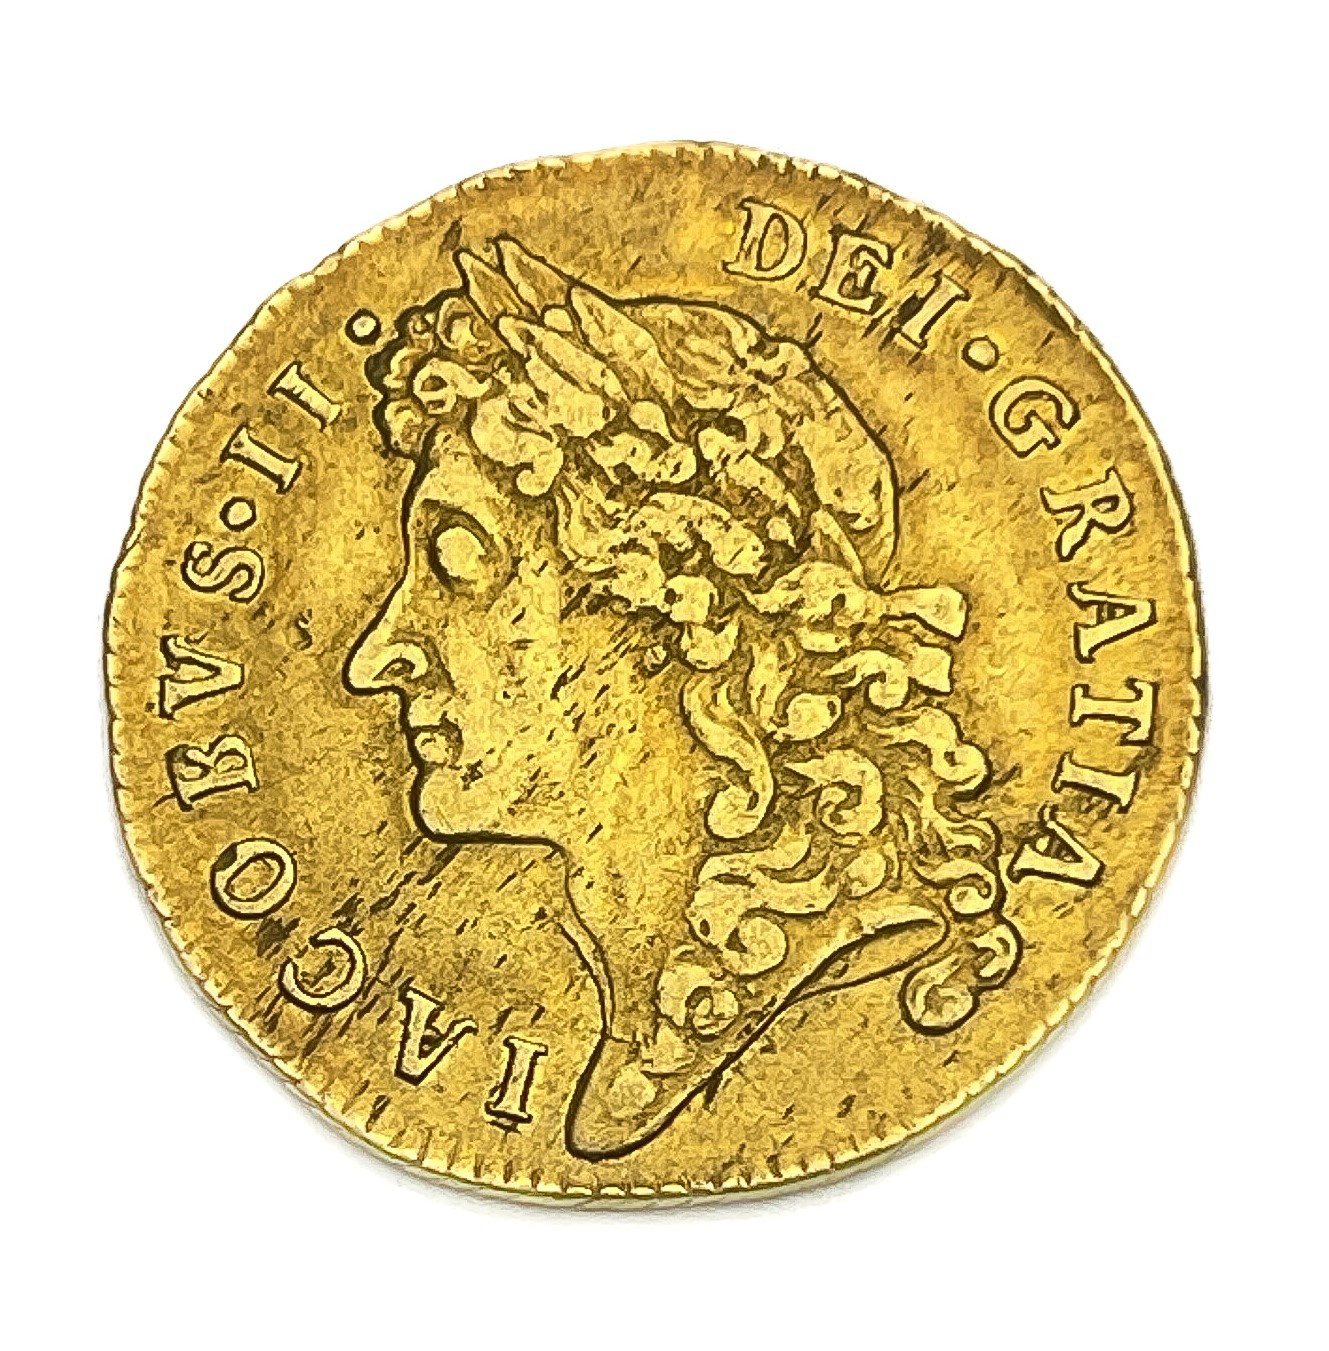 A James II Guinea coin